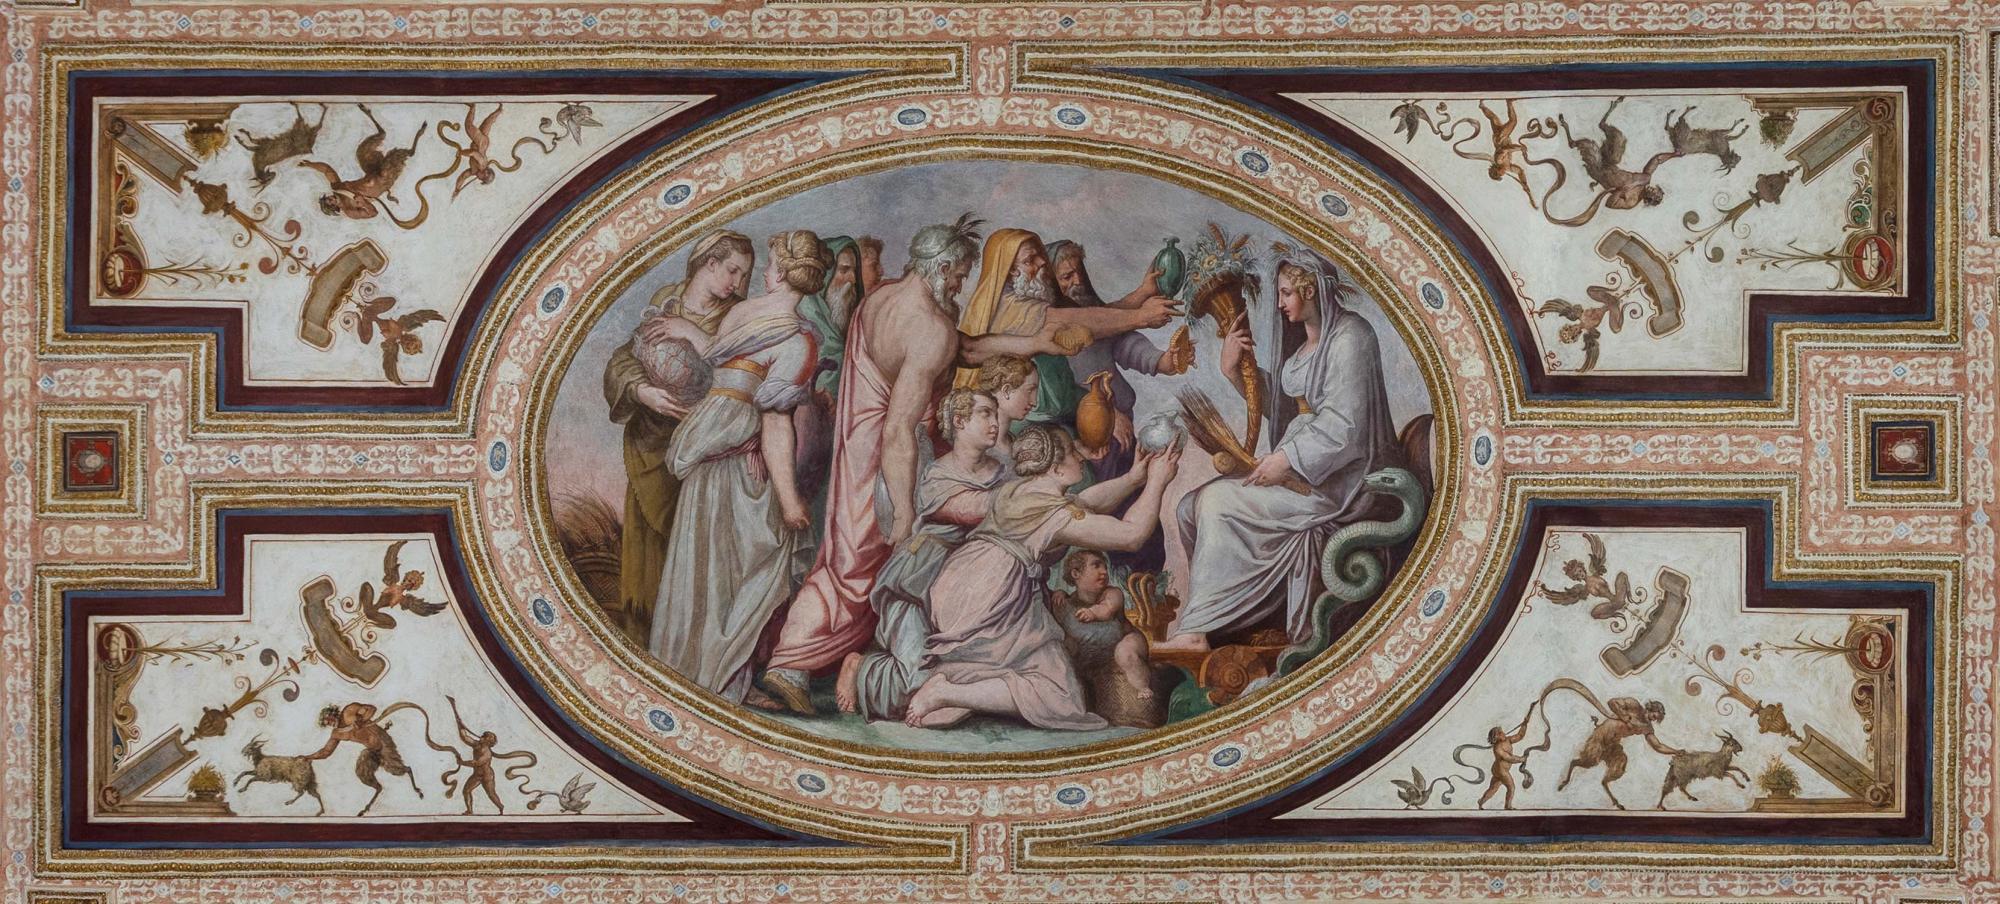 The Altoviti frescoes by Giorgio Vasari